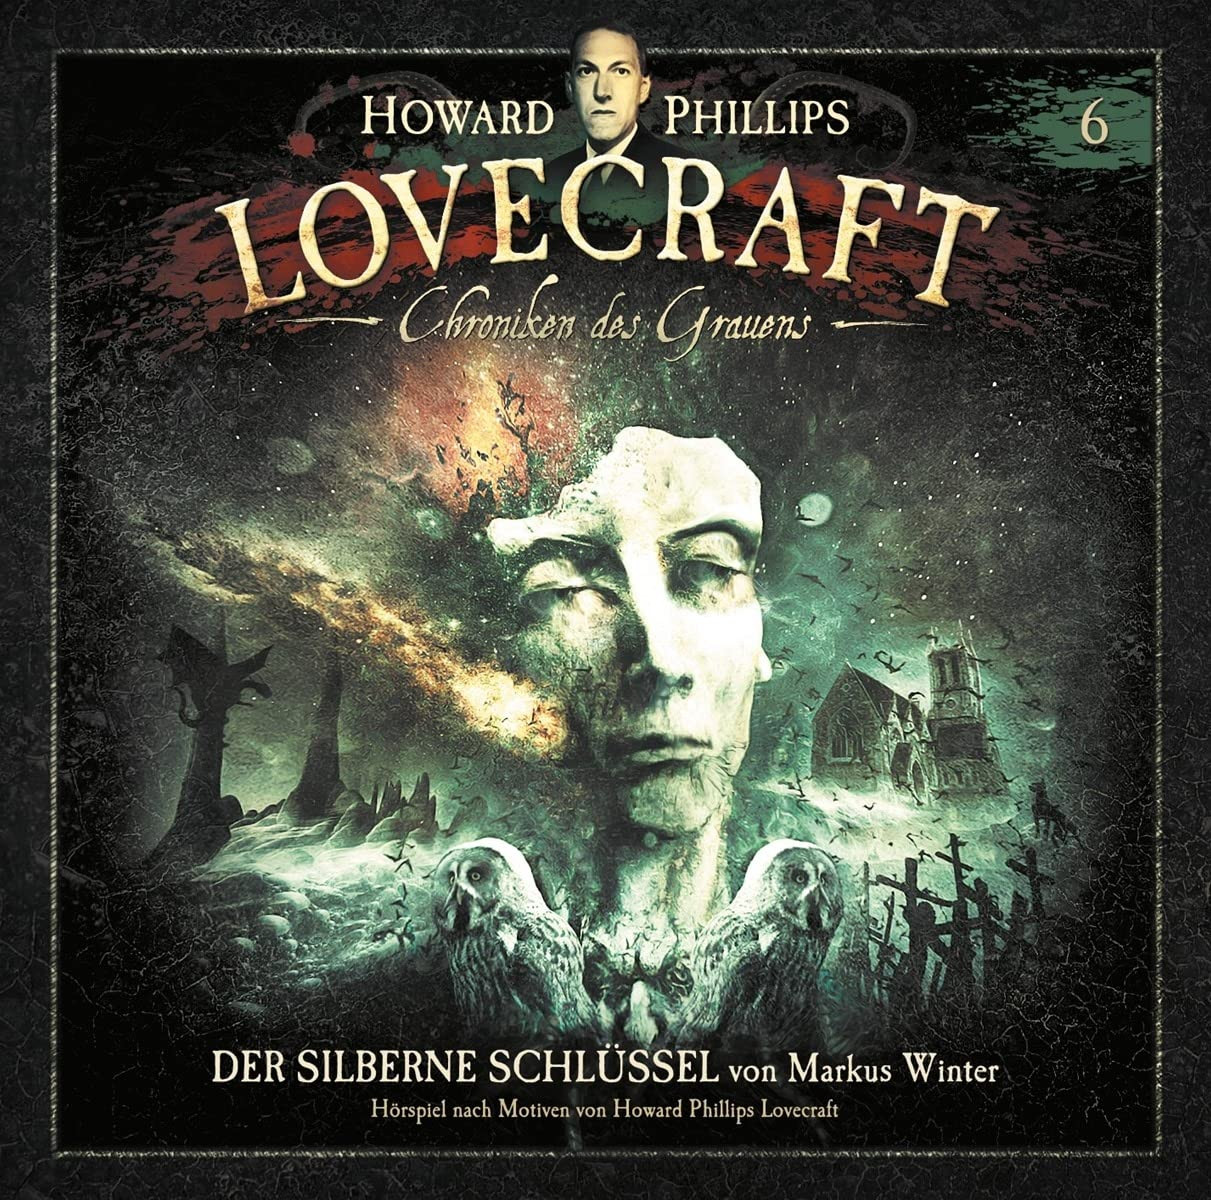 H.P. Lovecraft - Chroniken des Grauens - Folge 6: Der silberne Schlüssel